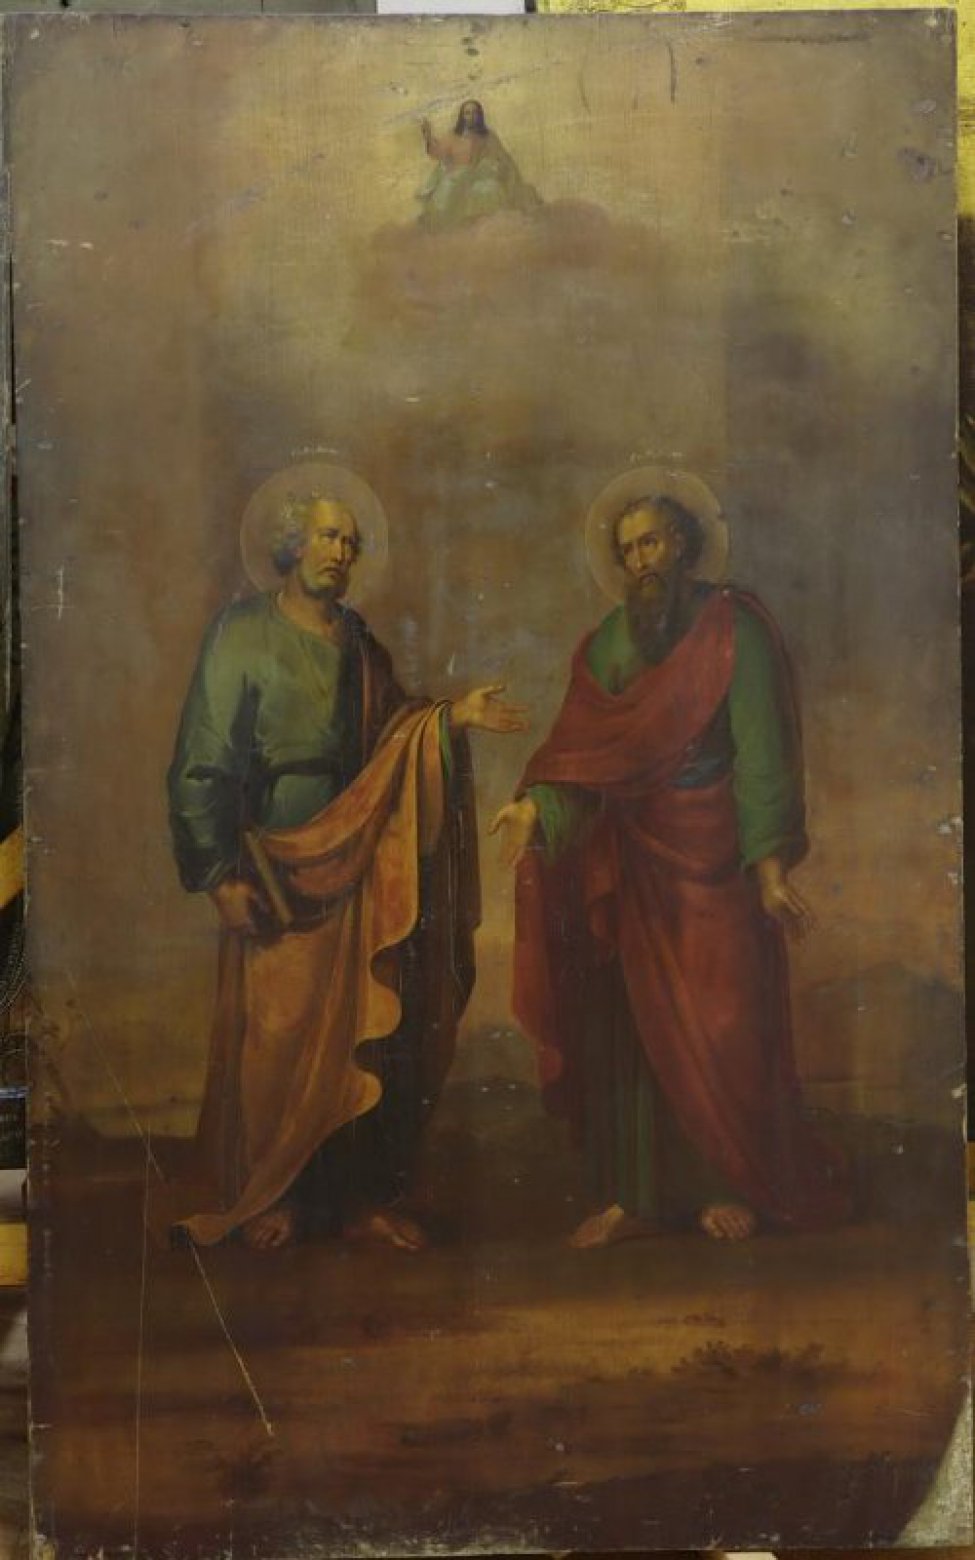 Доска: Доска без выемки, с двумя дубовыми врезными шпонками.
Изображены святые Петр и Павел в рост, в полуоборот друг к другу. Фон светло-коричневый.